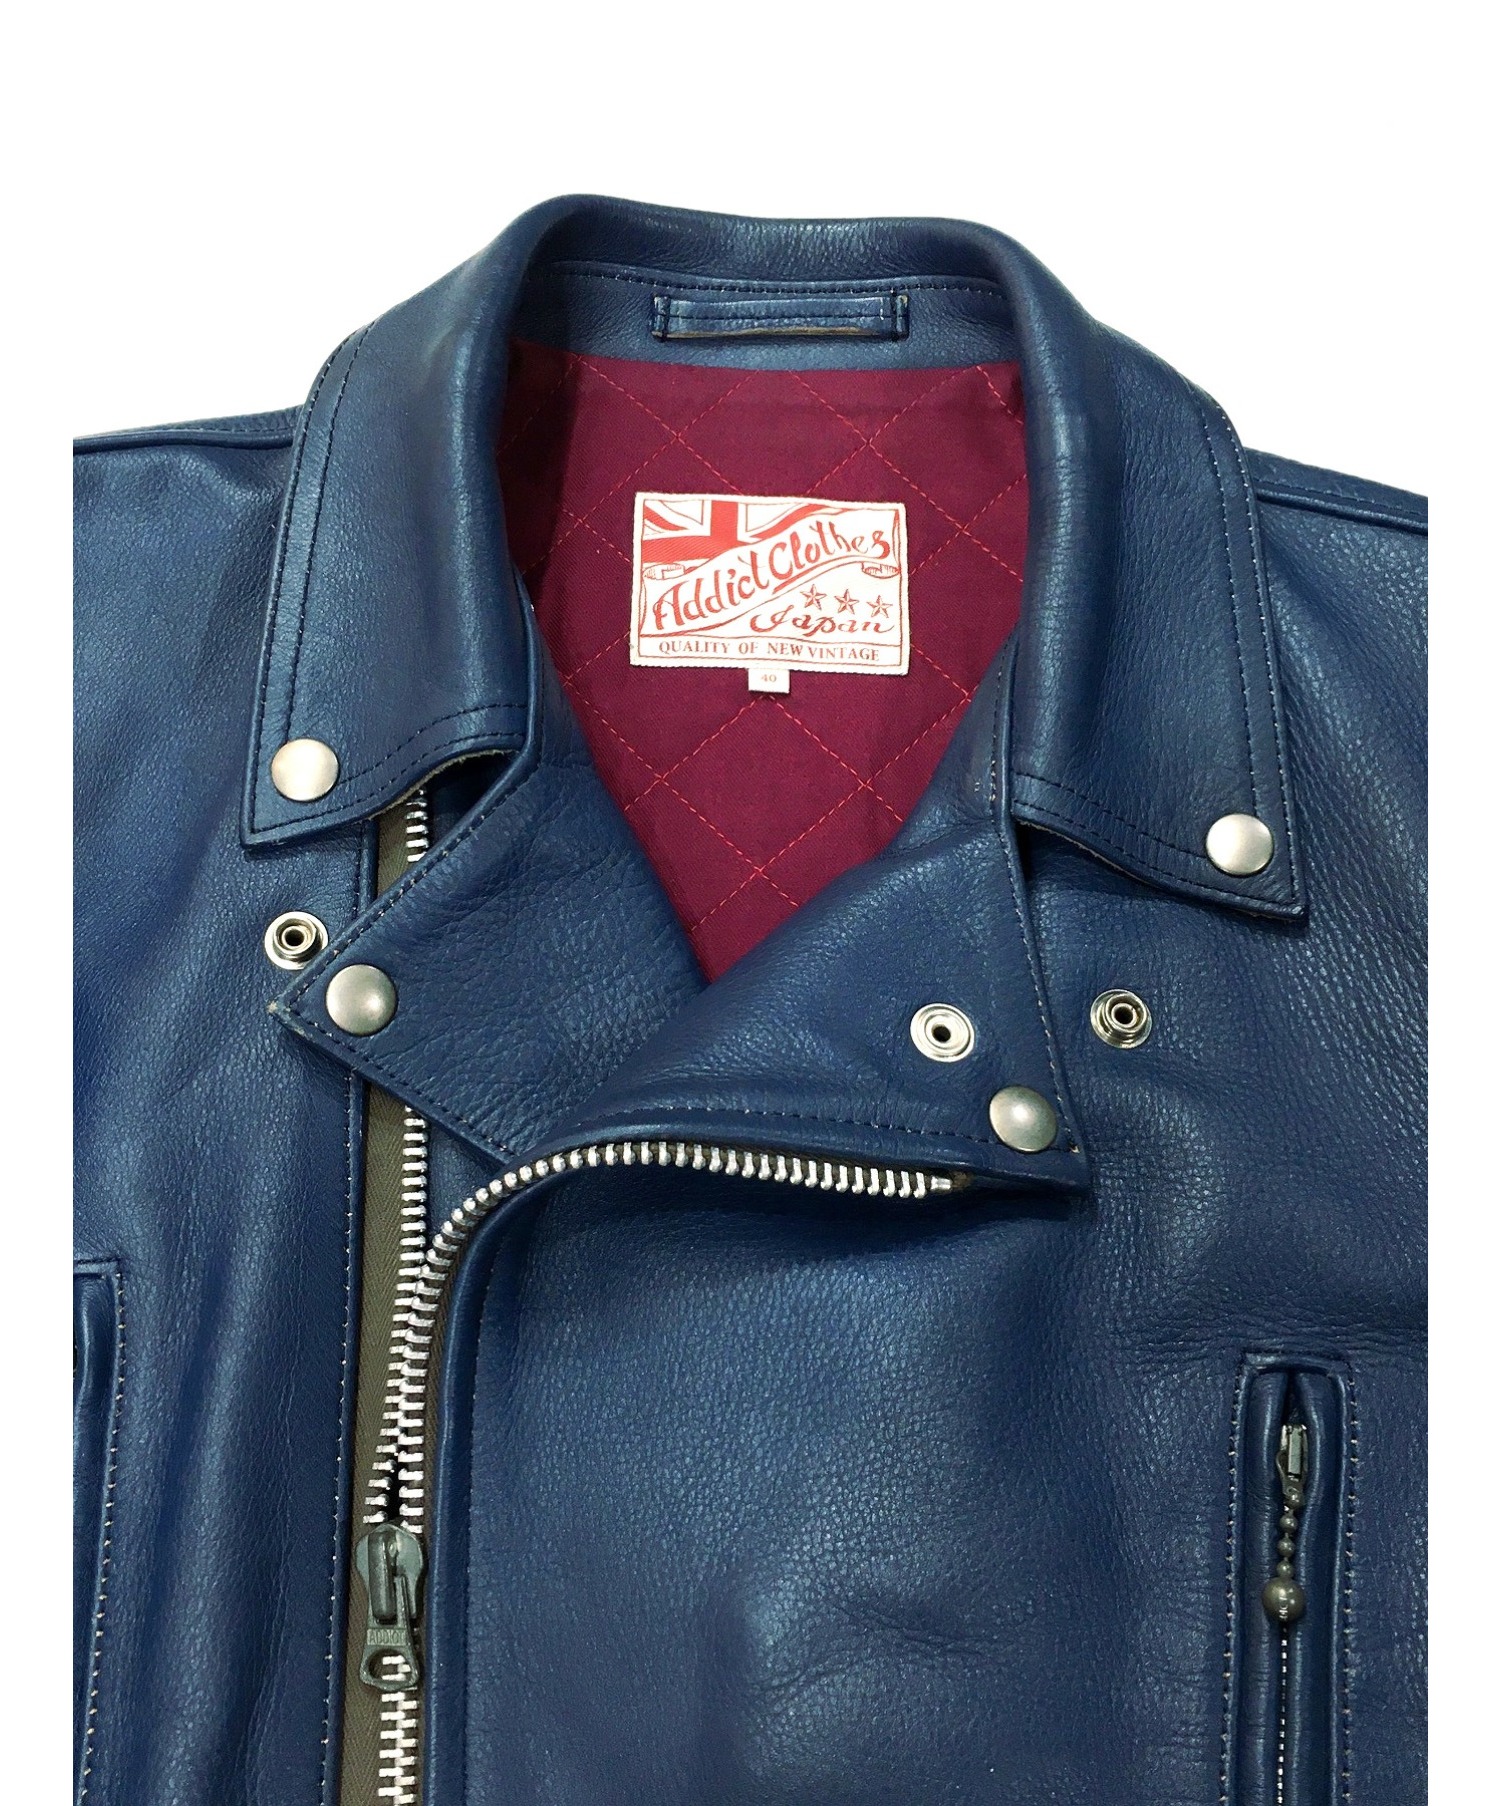 ADDICT CLOTHES (アディクト クローズ) カウレザーダブルライダースジャケット ブルー サイズ:40